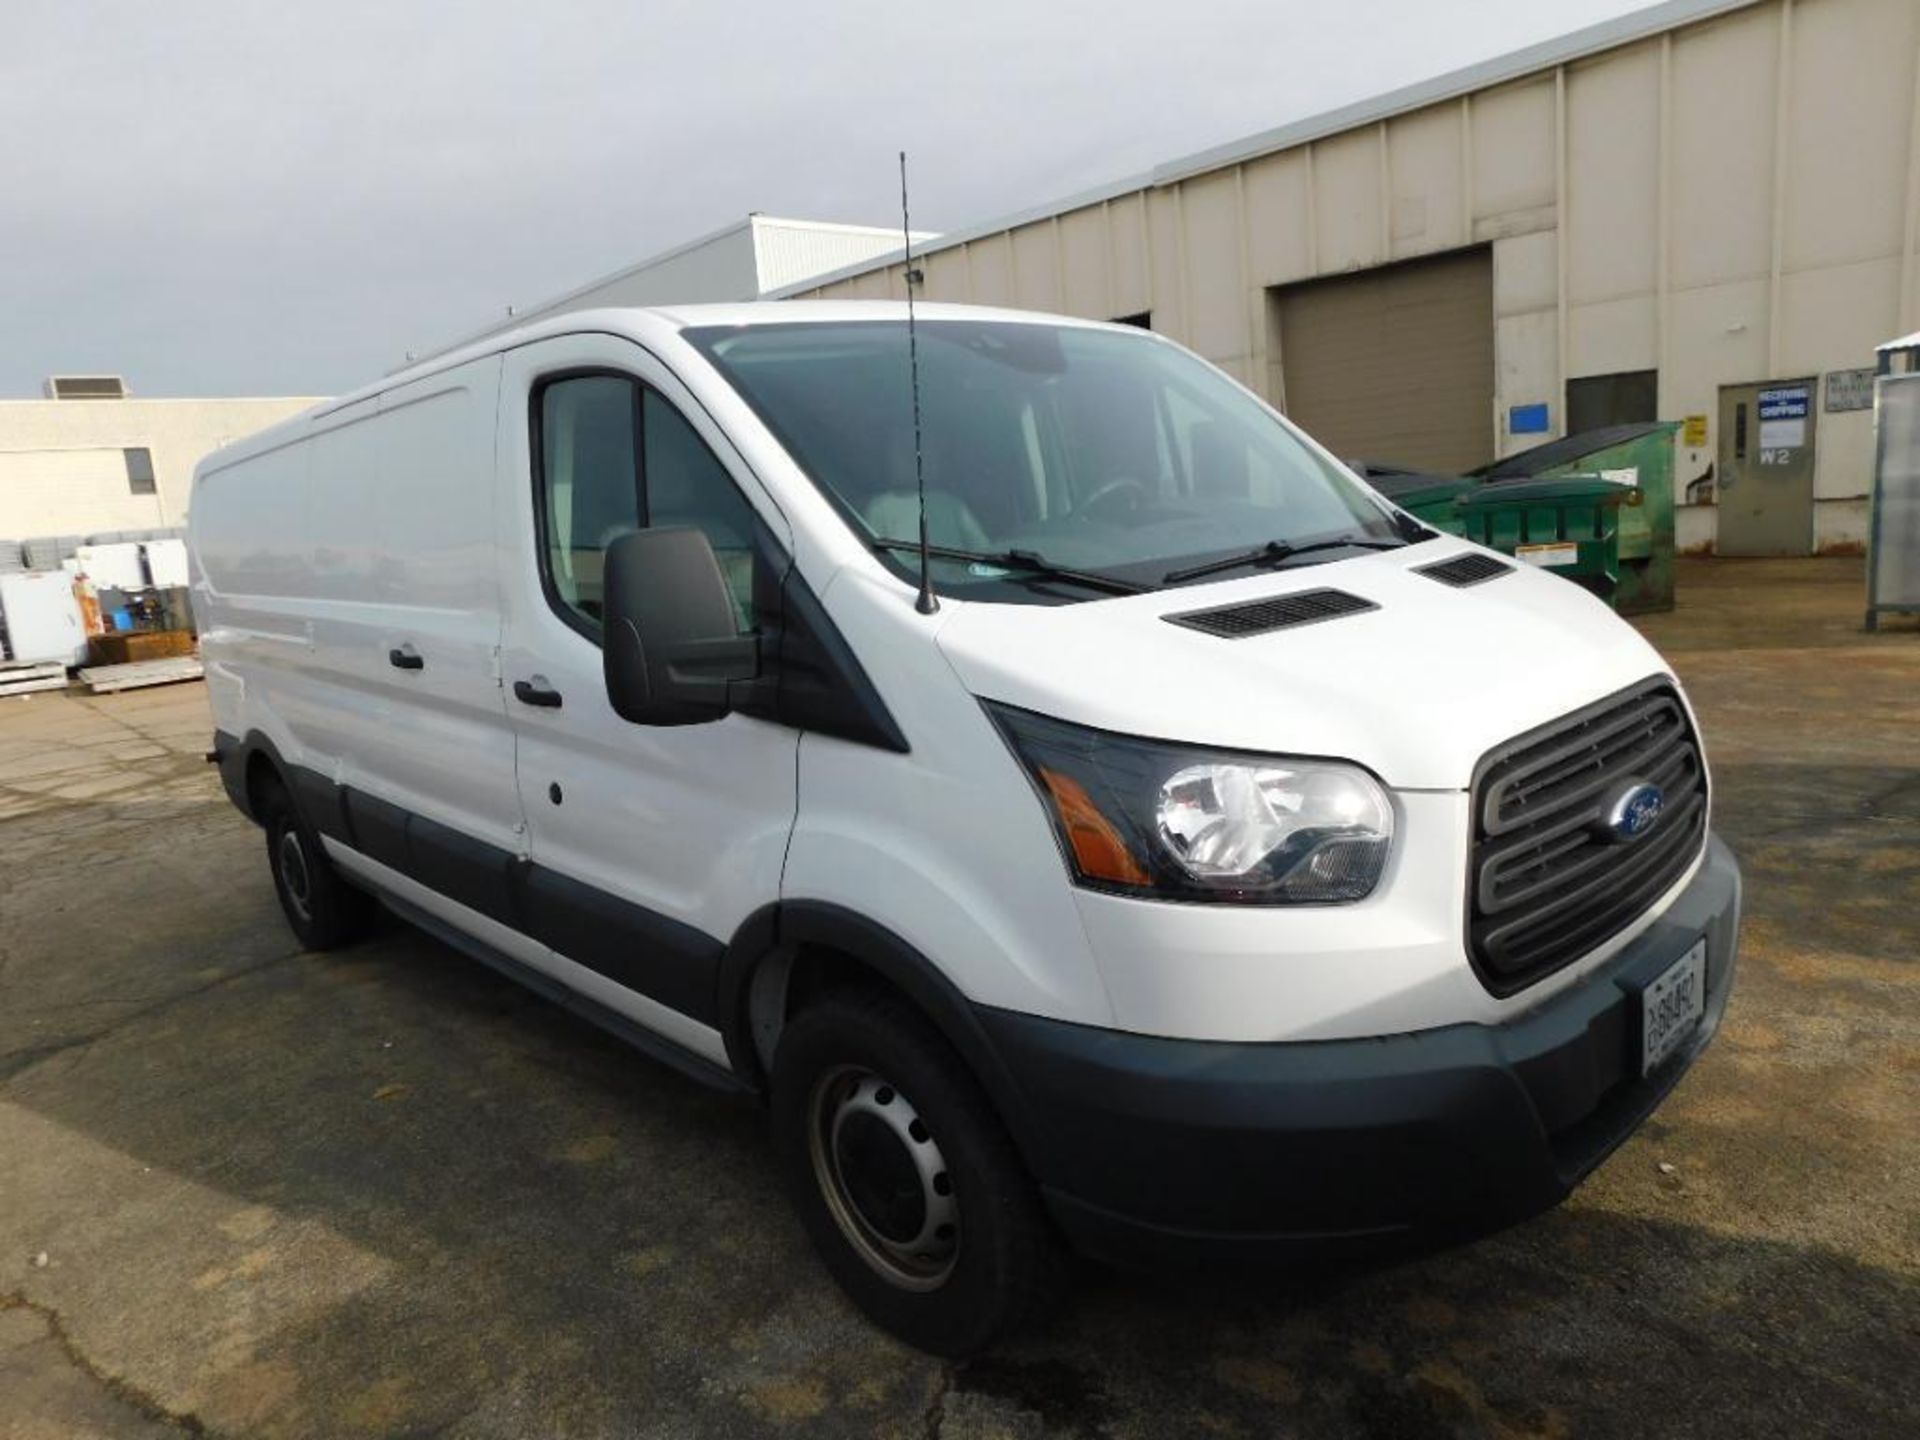 2017 Ford Model Transit 350 SRW Connect Cargo Van, VIN: 1FTBW2ZM2HKB25140 6-Cylinder 3.7-Liter Gasol